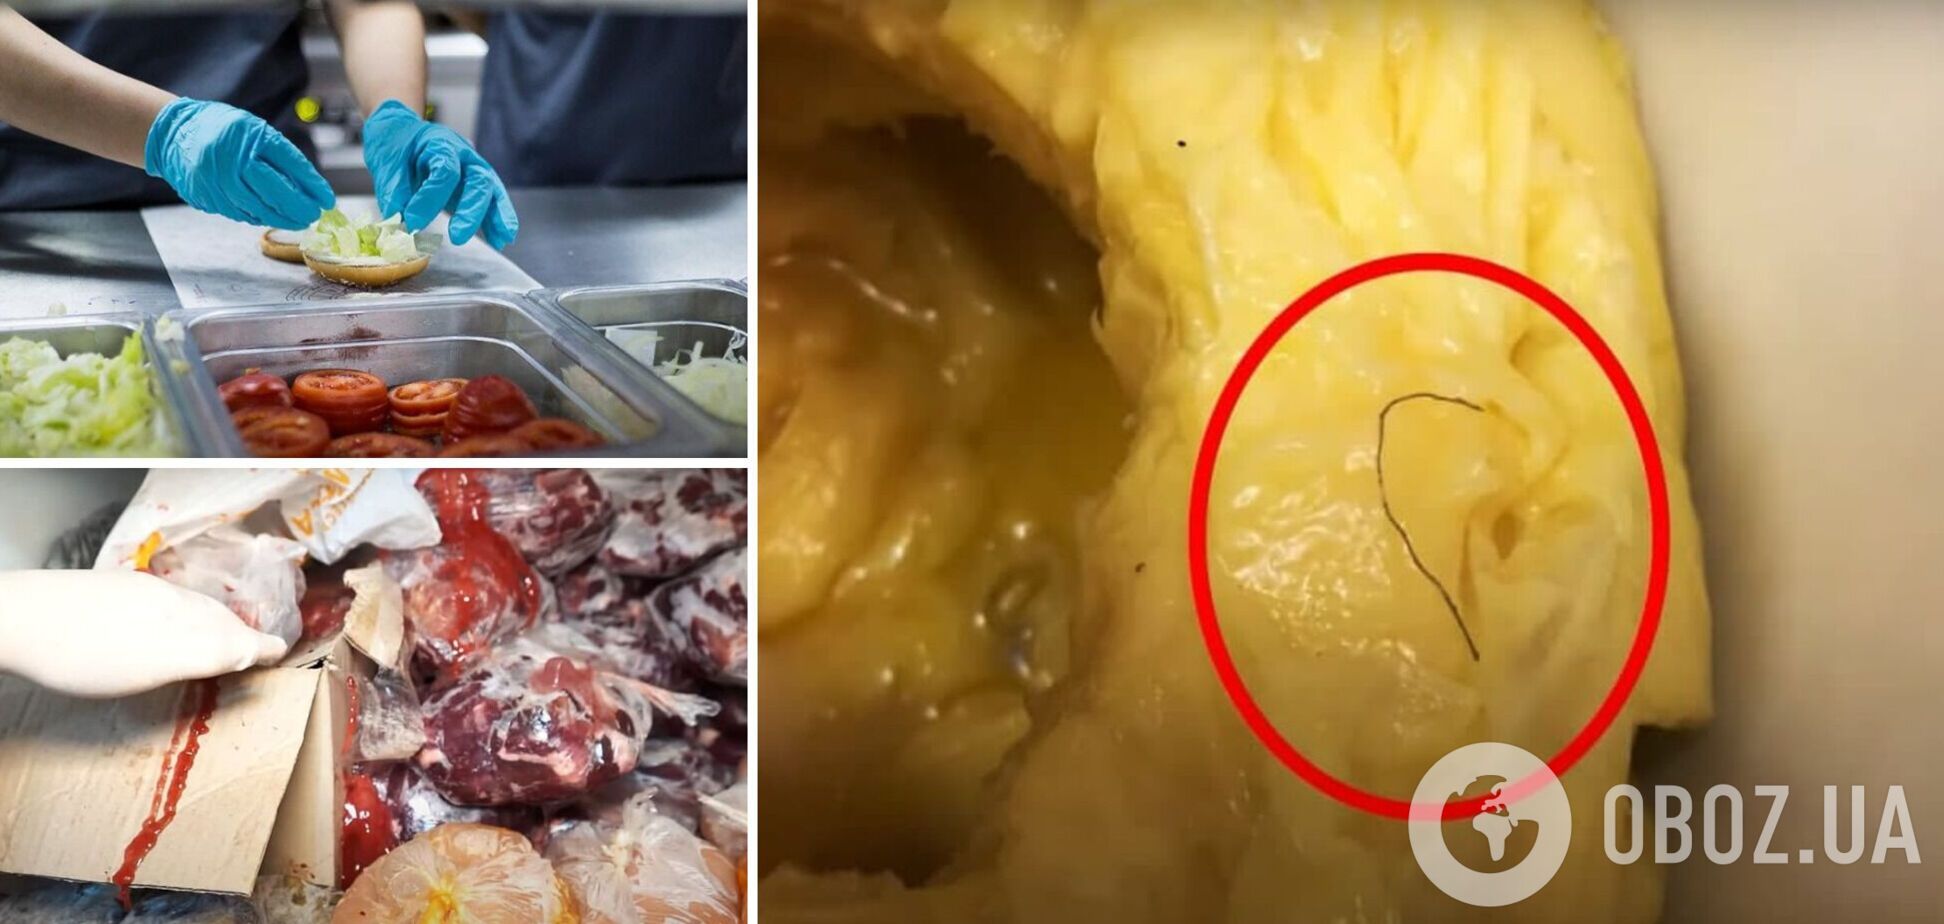 У київському ресторані експерти знайшли волосся в жирі і кров на хлібі